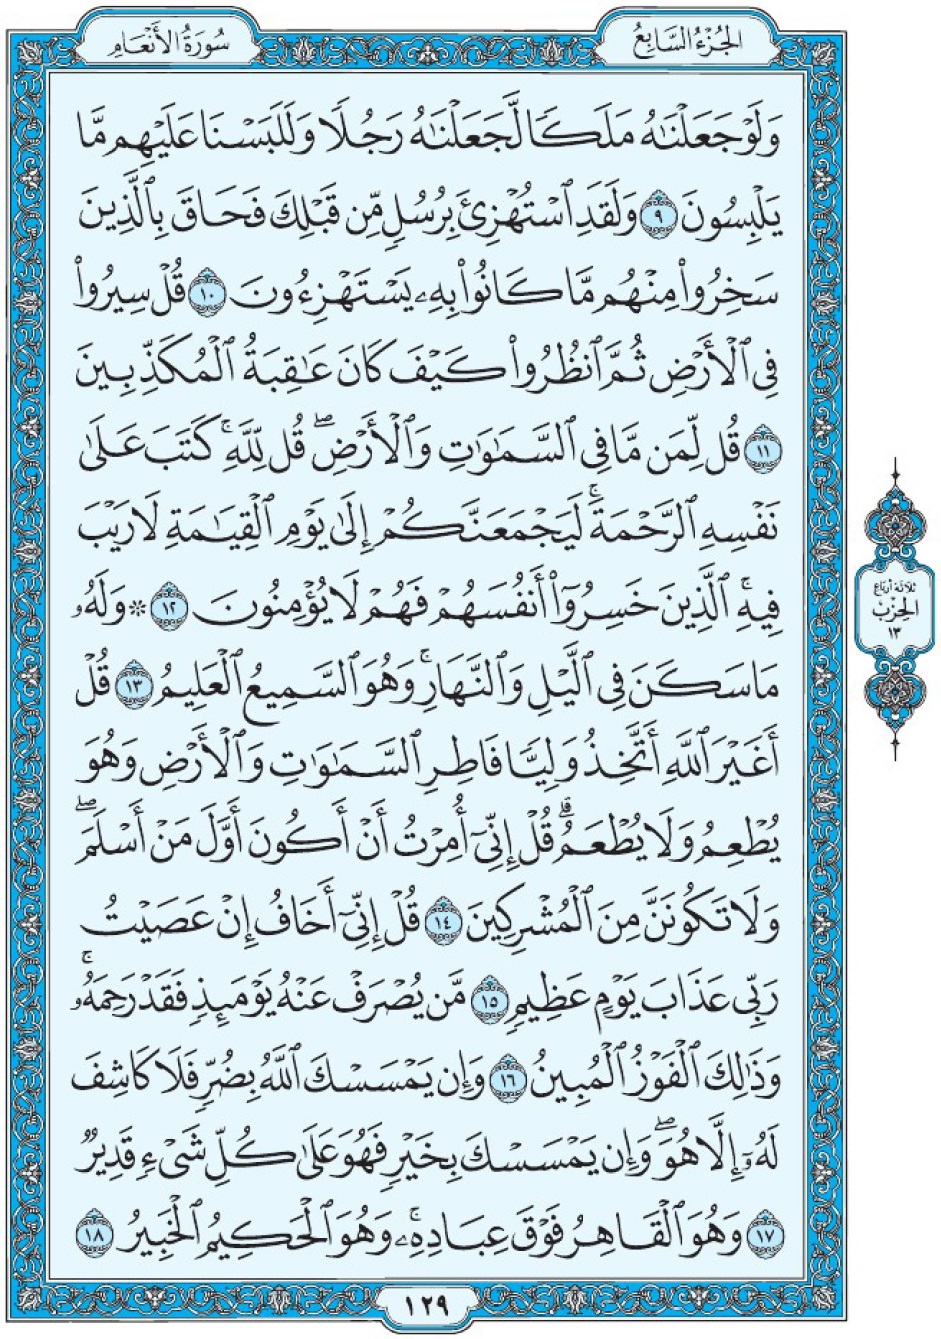 Коран Мединский мусхаф страница 129, Аль-Ан‘ам, аят 9-18